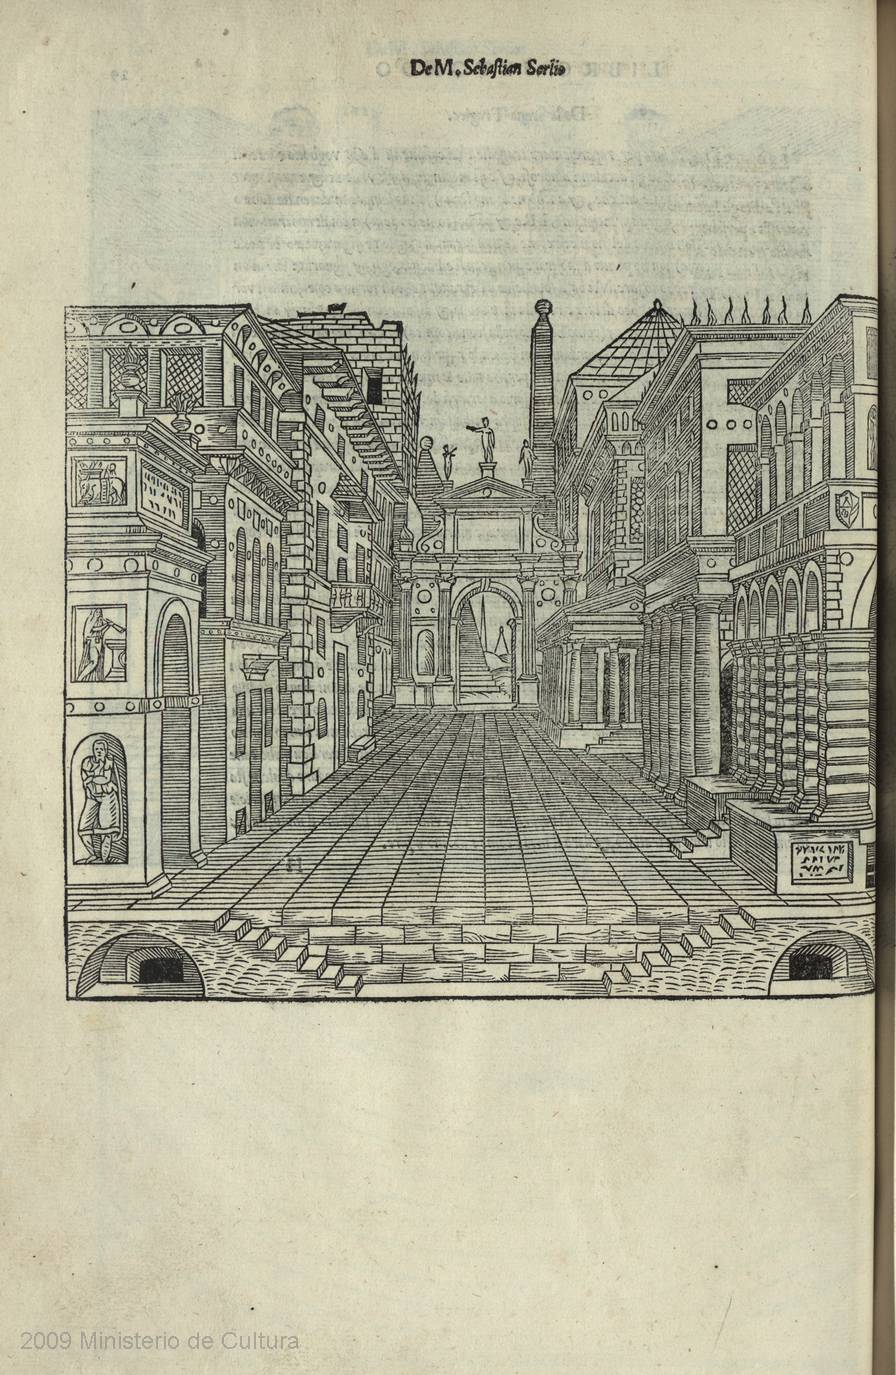 Sebastiano Serlio. 1551. Propuesta de composición escenográfica para escena de temática trágica.